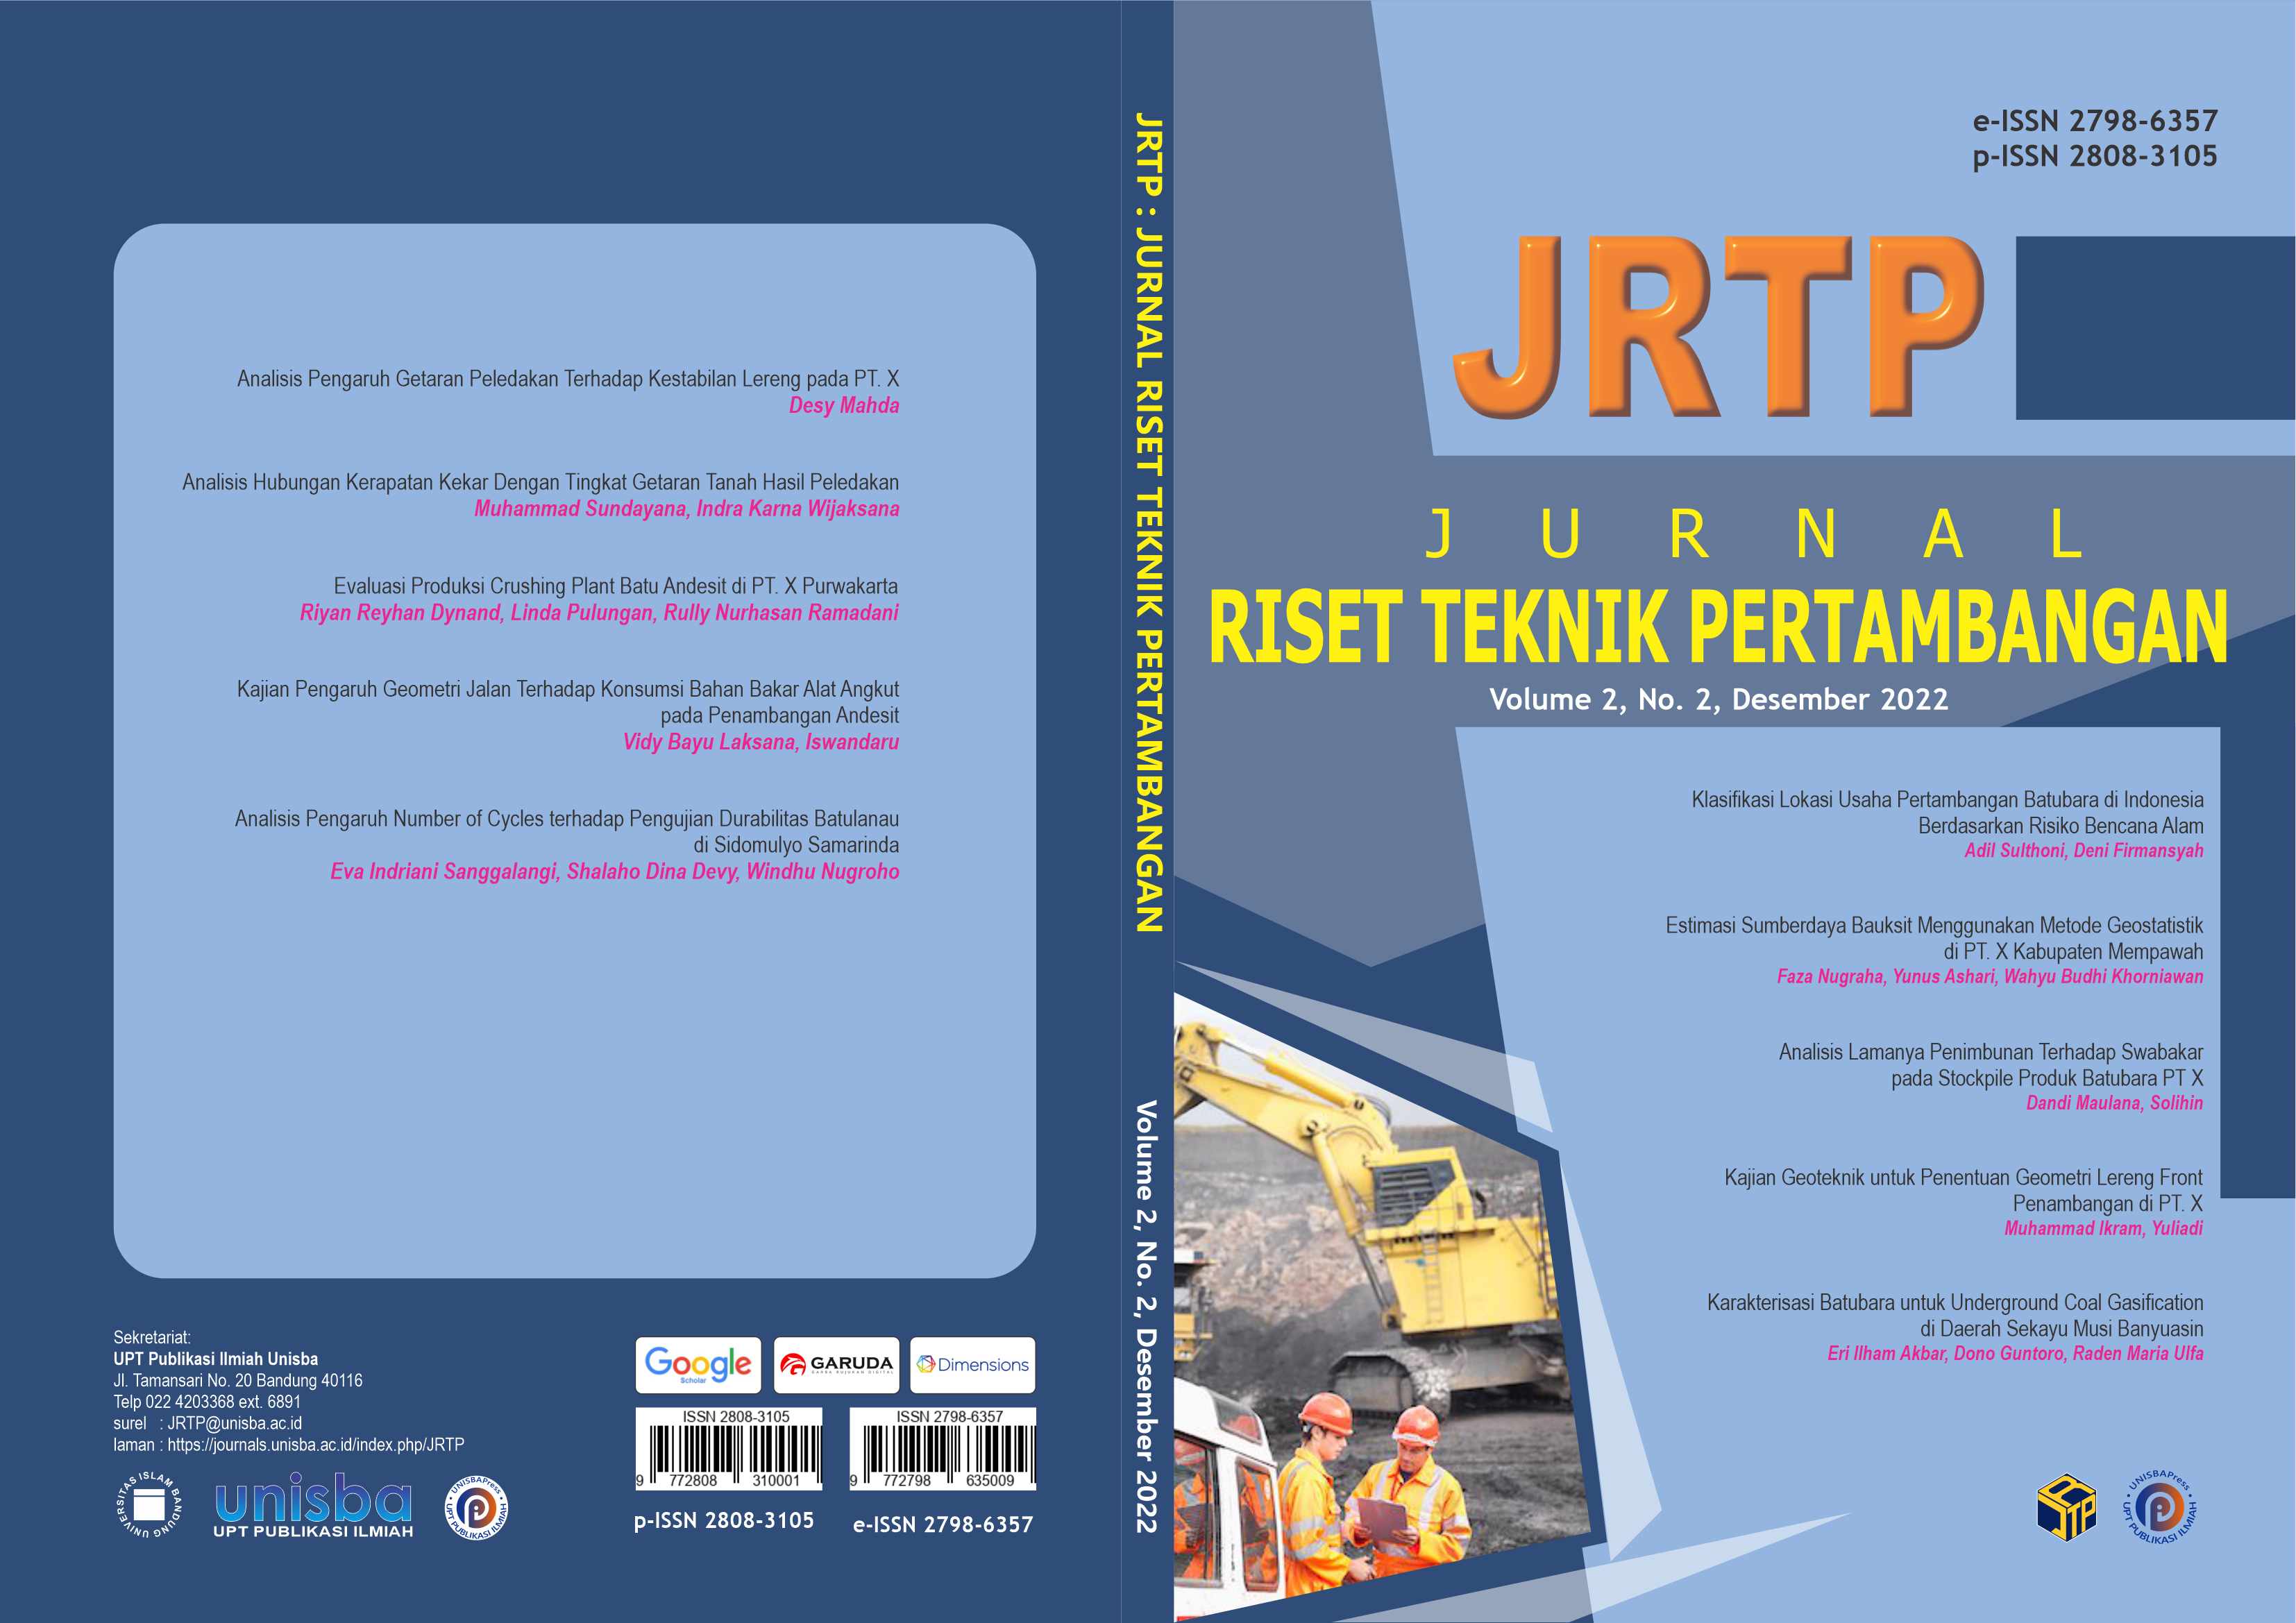 					View Volume 2, No. 2, Desember 2022, Jurnal Riset Teknik Pertambangan (JRTP)
				